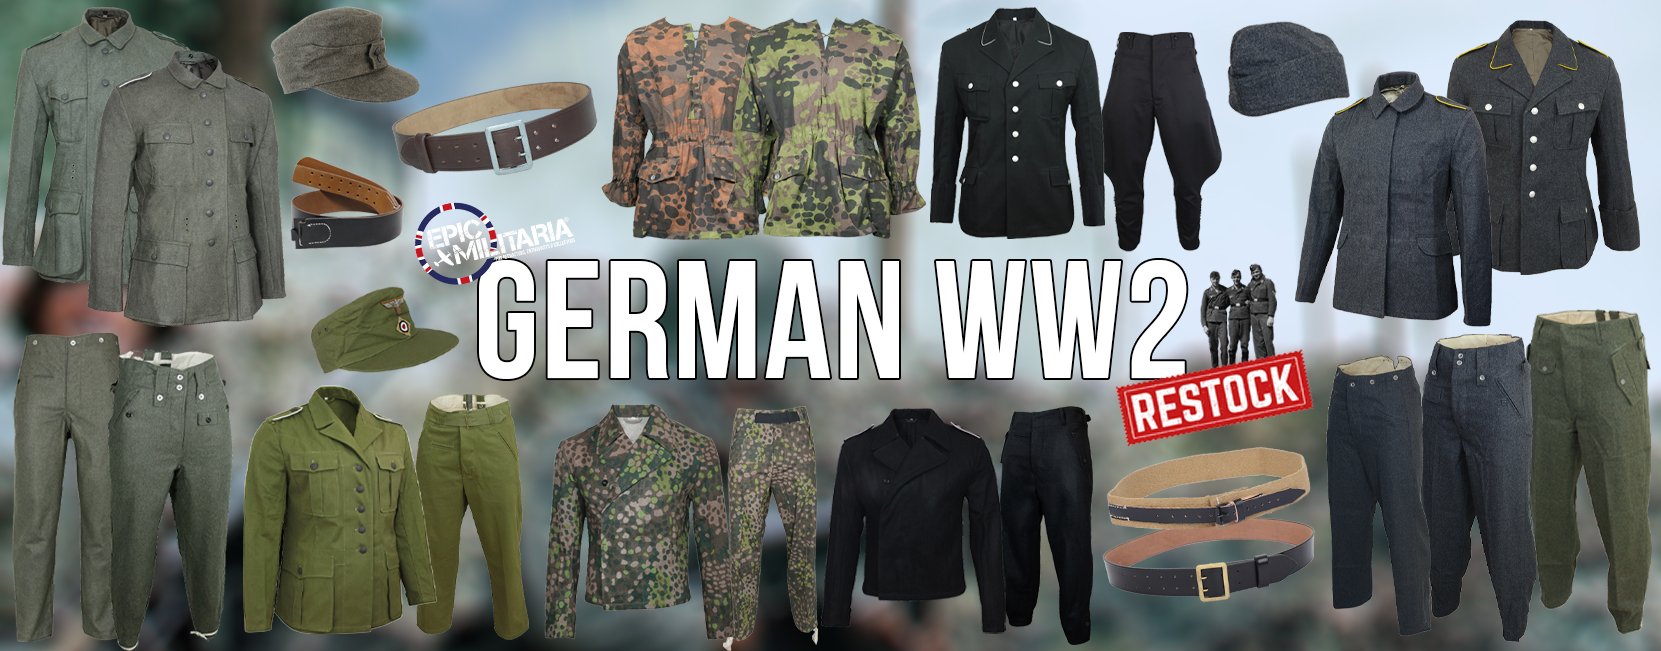 WW2 GERMAN RESTOCK WEB